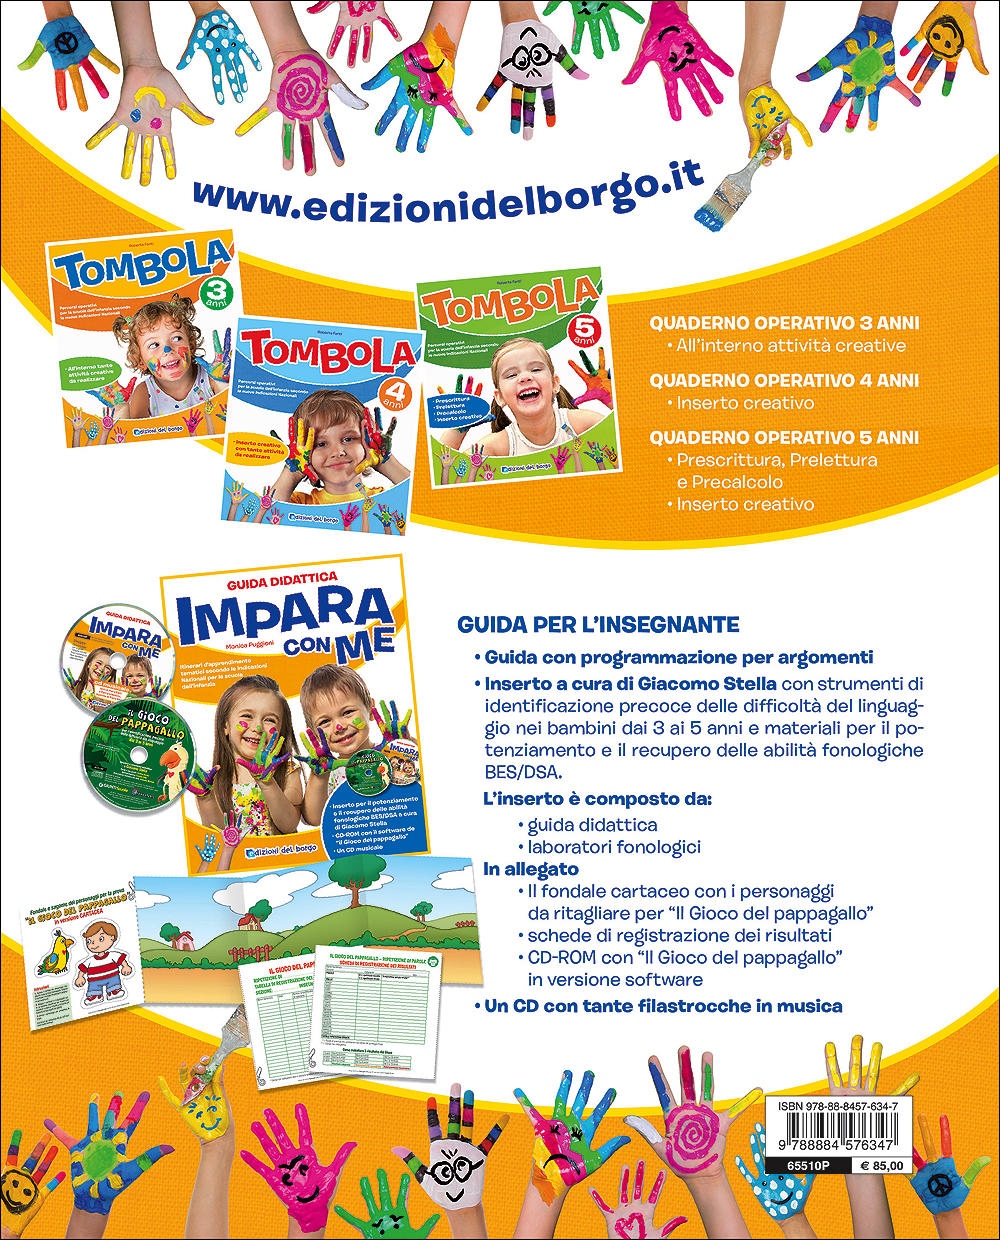 Impara con me - Guida didattica + 2 CD. Itinerari d'apprendimento tematici secondo le Indicazioni Nazionali per la scuola dell'infanzia